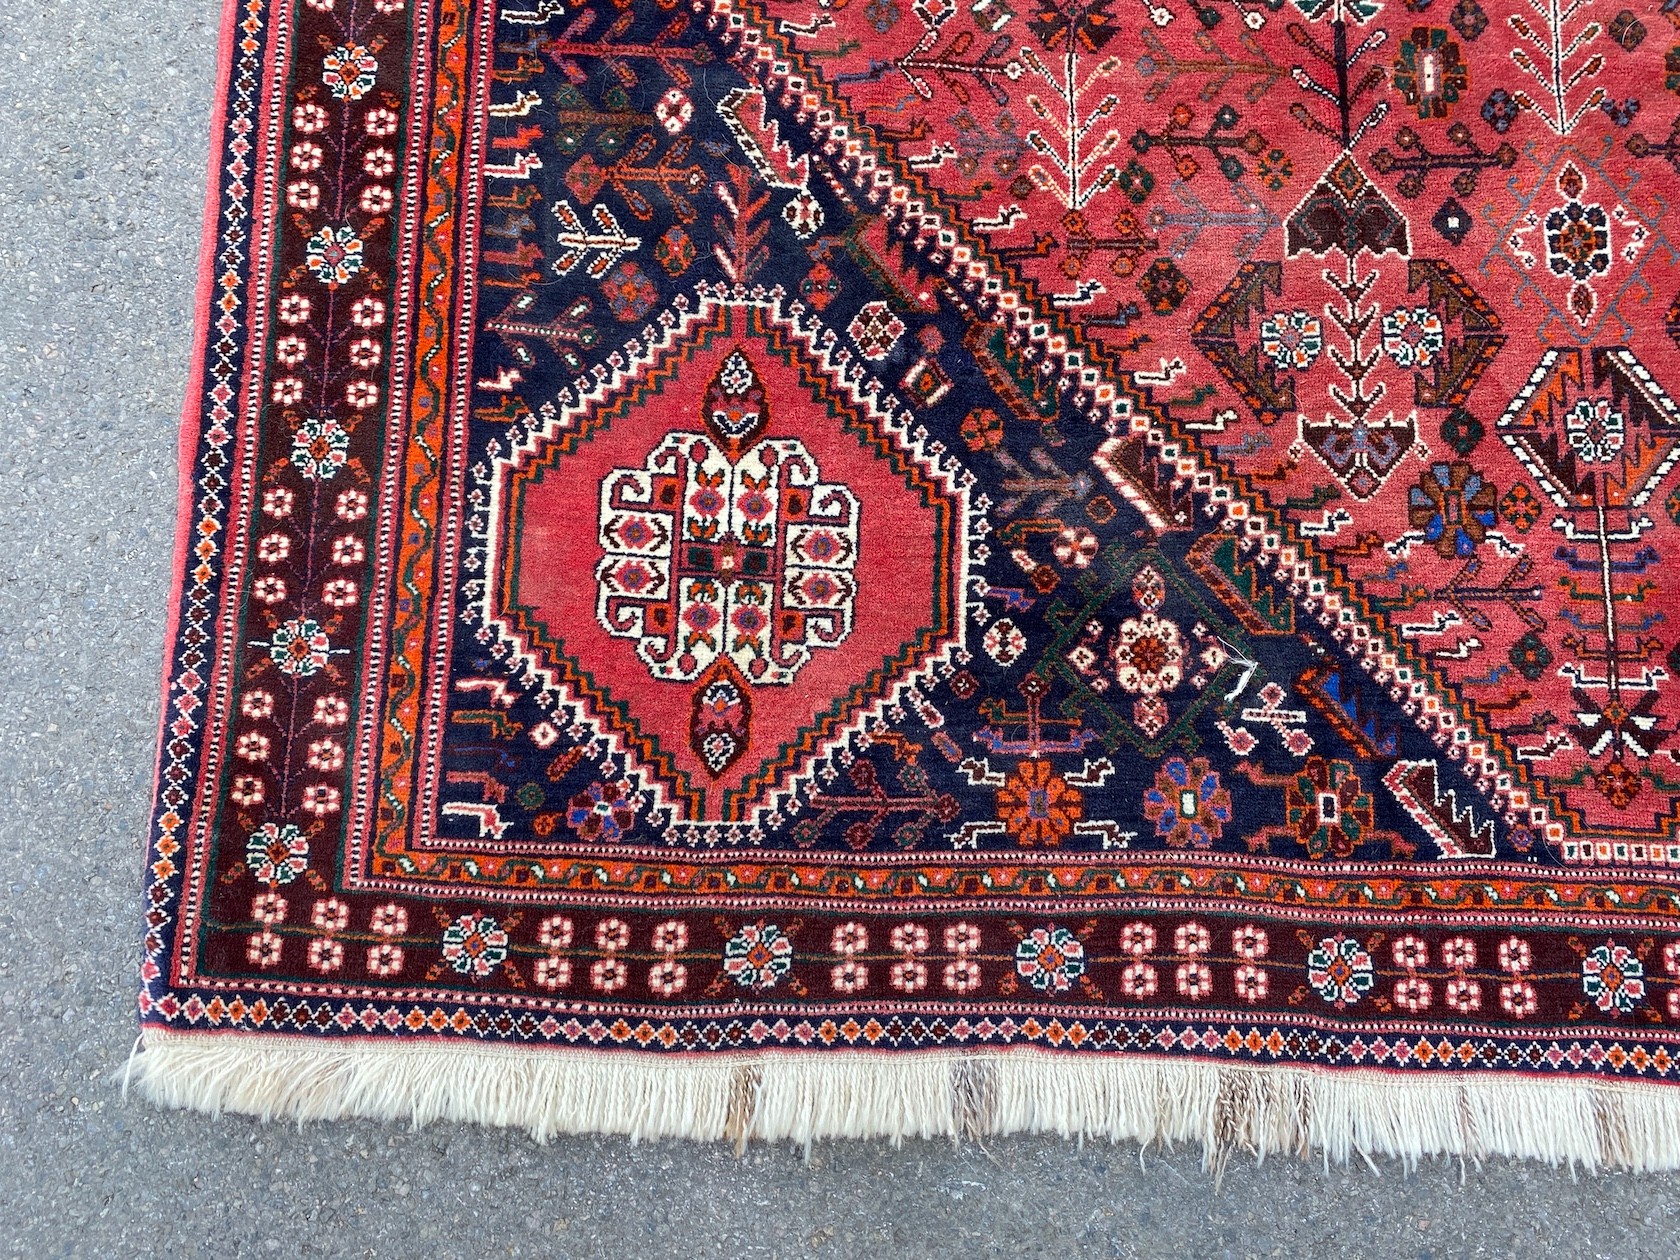 A North West Persian carpet, 320 x 210cm